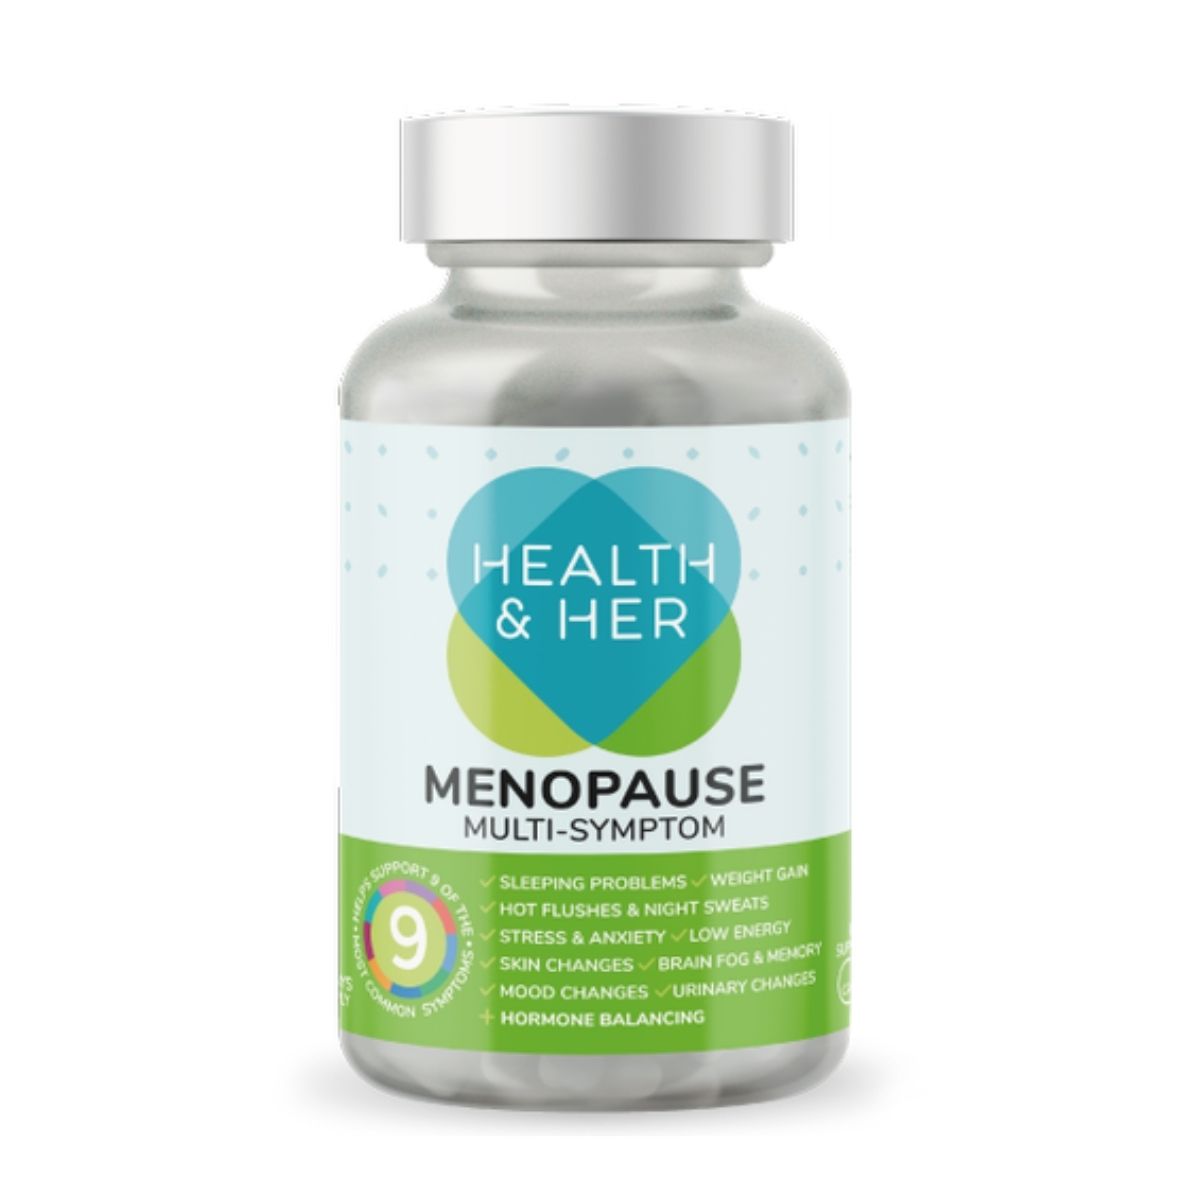 Health & Her Menopause Supplement